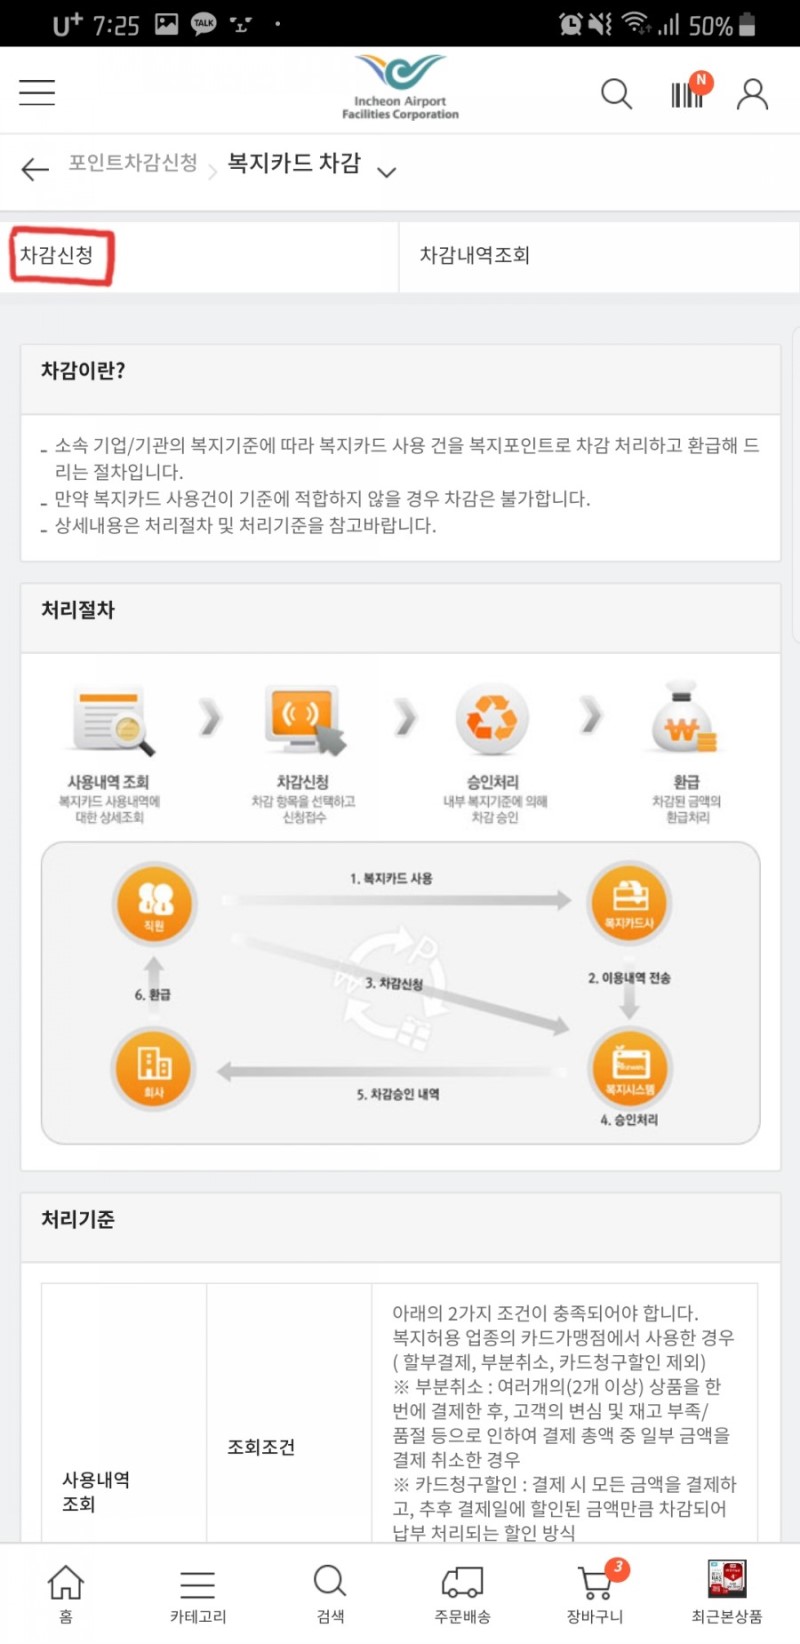 복지카드 이지웰페어 모바일 복지관 사용법/한도 : 네이버 블로그